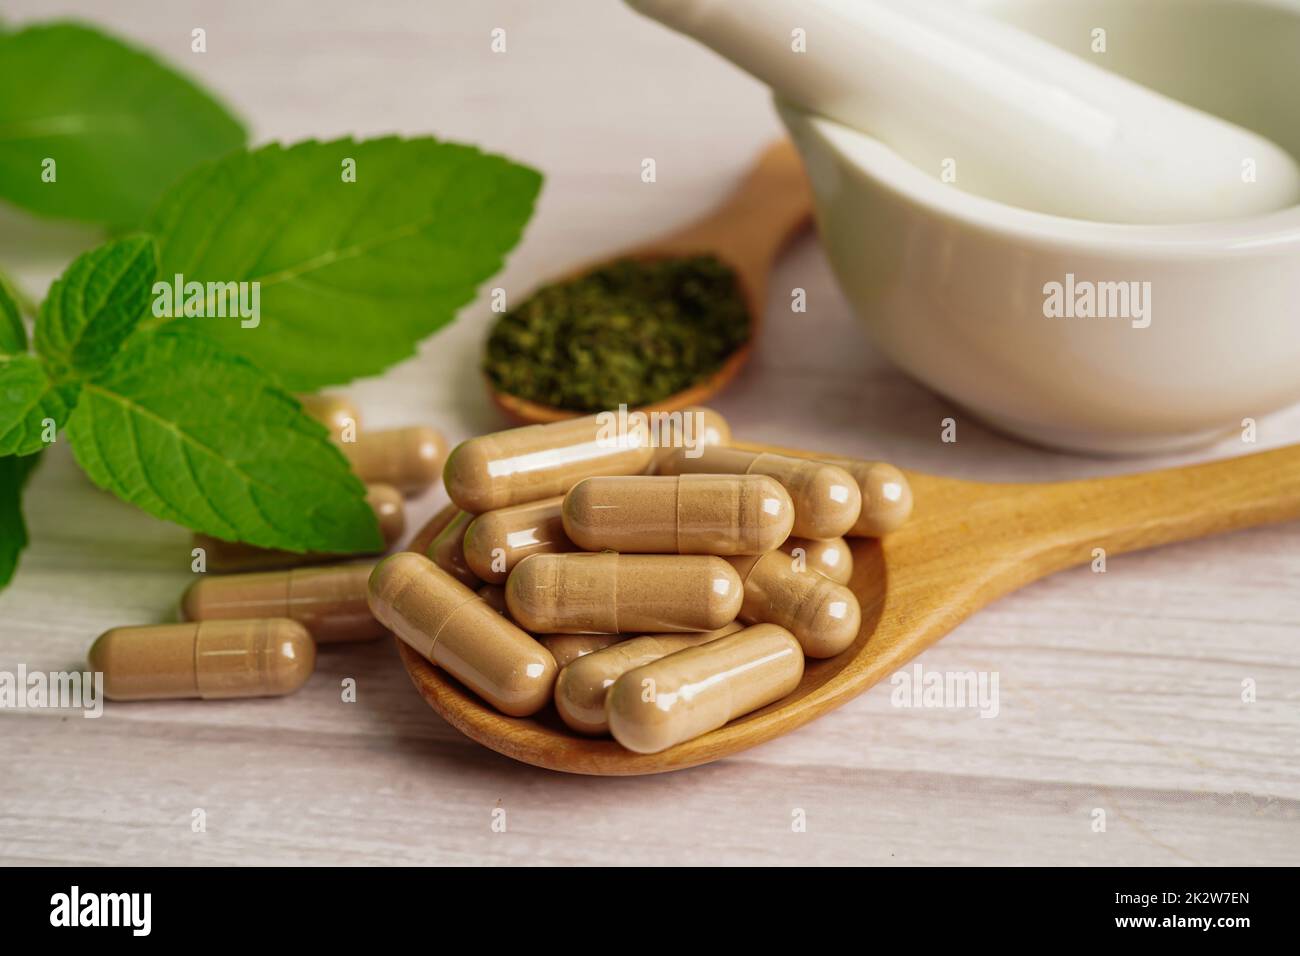 Alternative Medizin pflanzliche Bio-Kapsel mit Vitamin E Omega 3 Fischöl, Mineral, Medikament mit Kräutern Blatt natürliche Ergänzungen für ein gesundes gutes Leben. Stockfoto